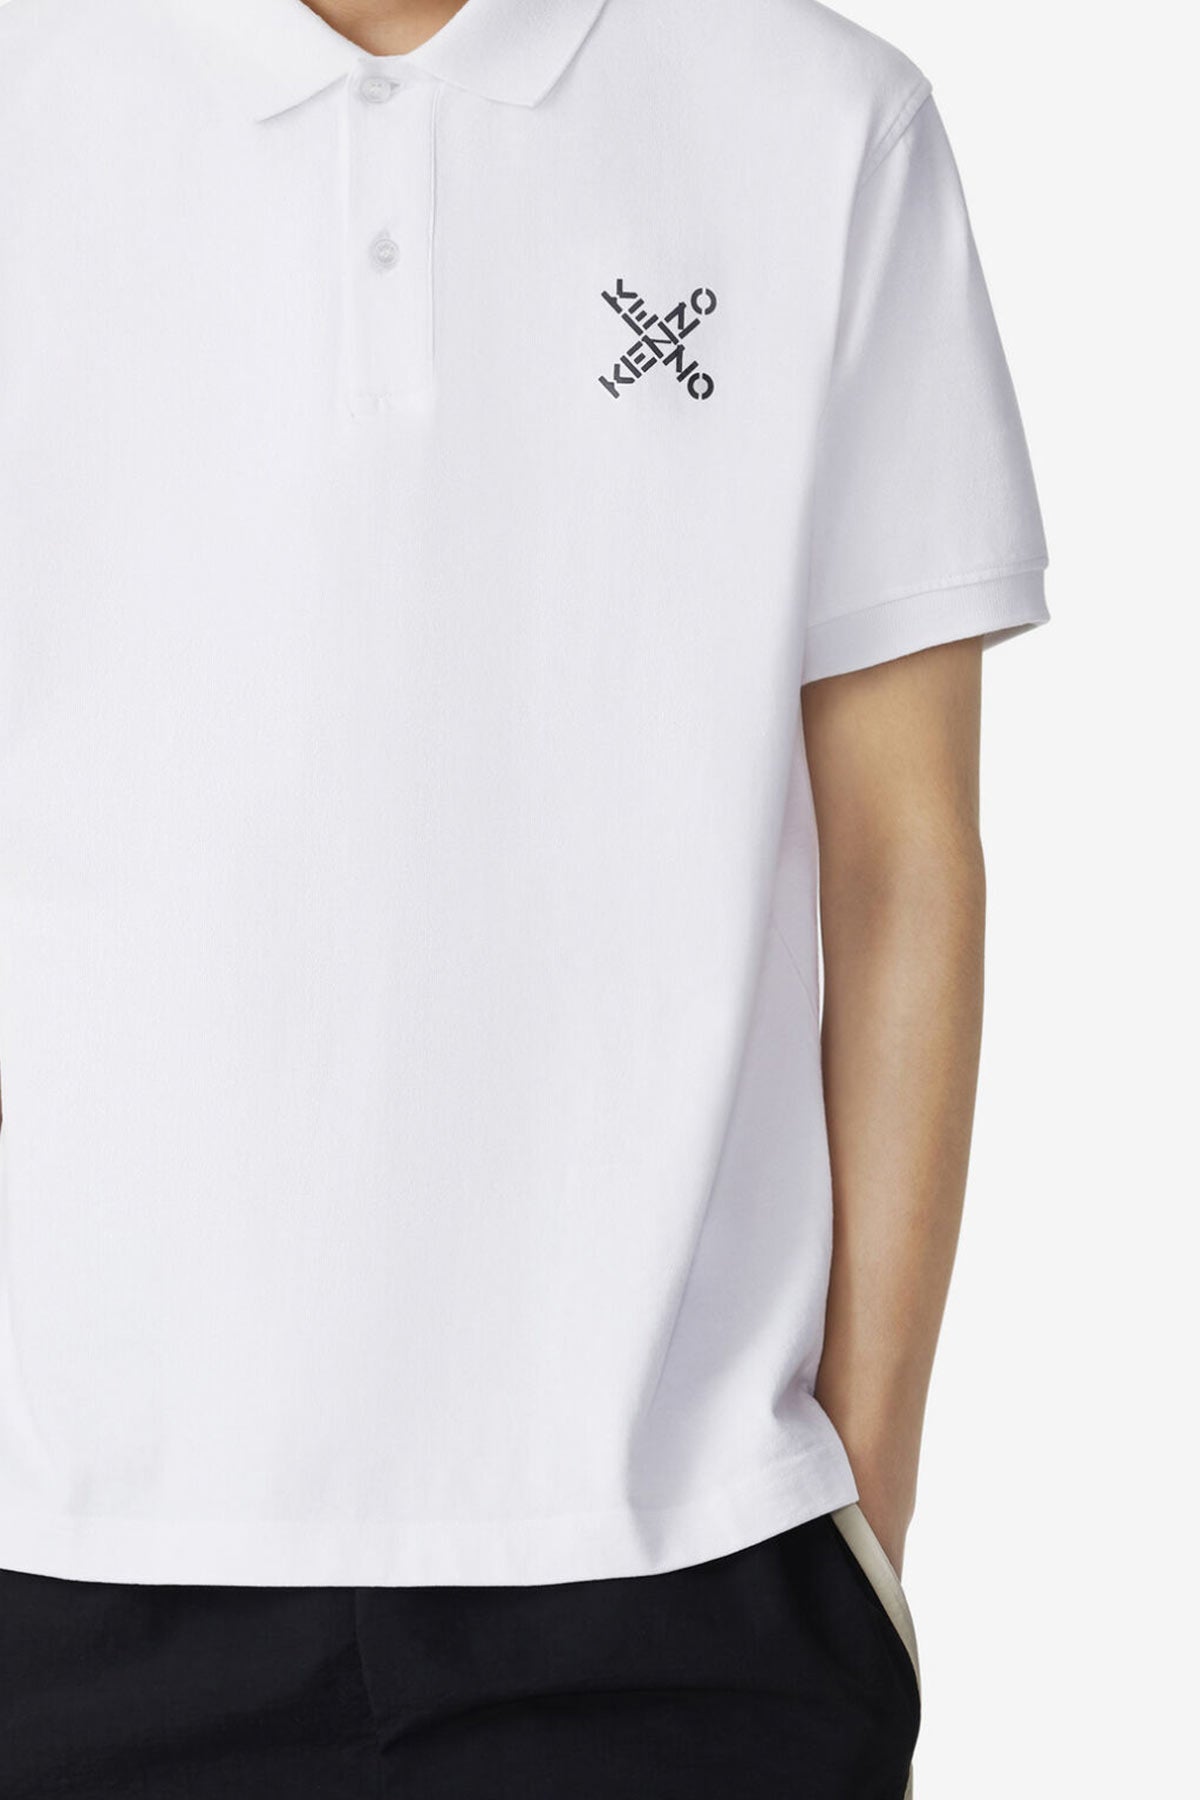 Kenzo Sport Polo Yaka T-shirt-Libas Trendy Fashion Store